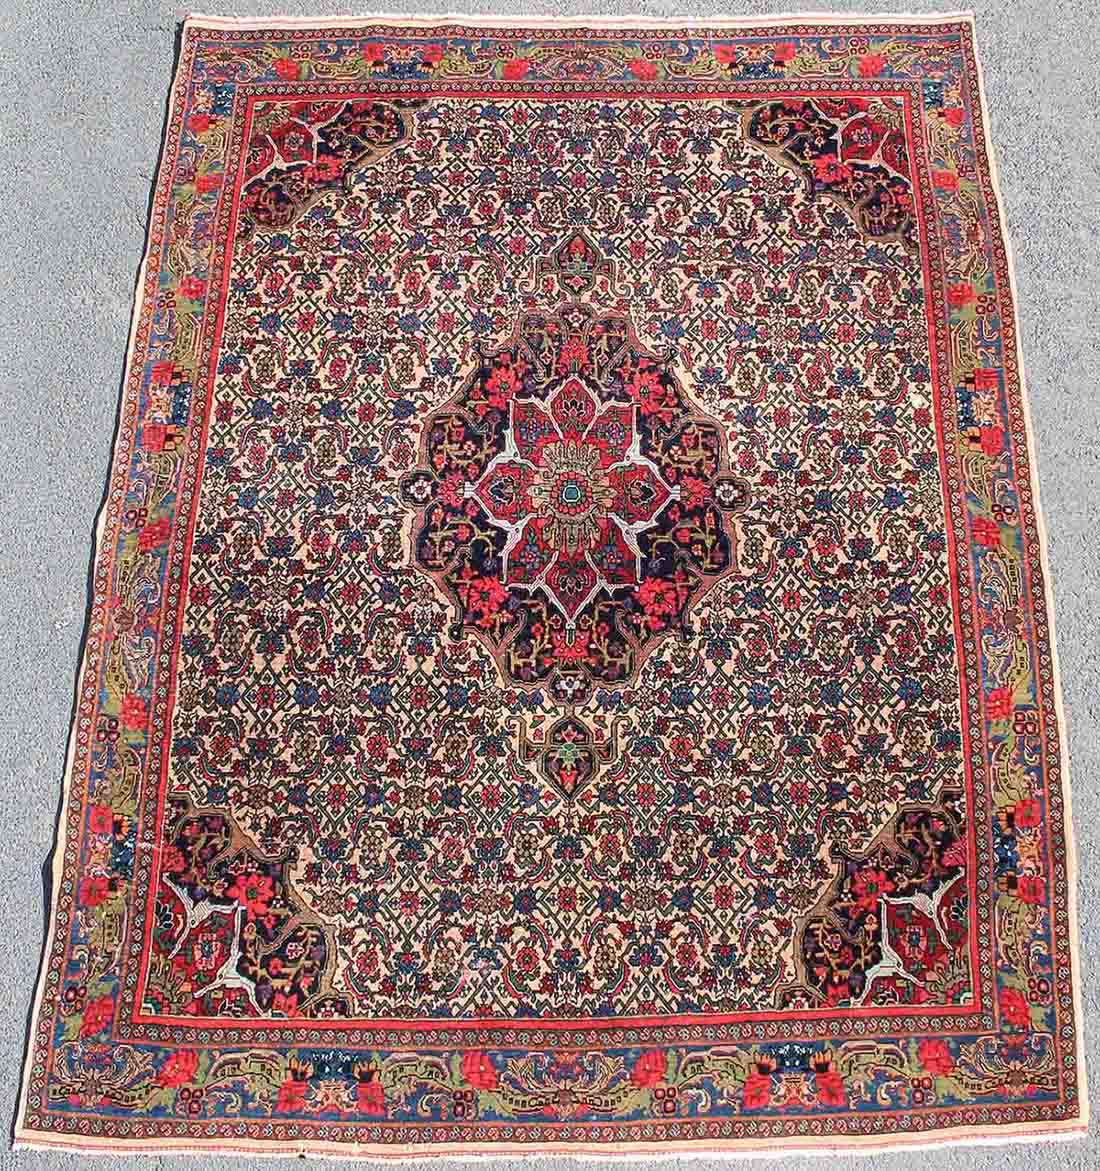 Bidjar Perserteppich. Iran. Circa 70 - 100 Jahre alt.202 cm x 152 cm. Handgeknüpft. Wolle auf